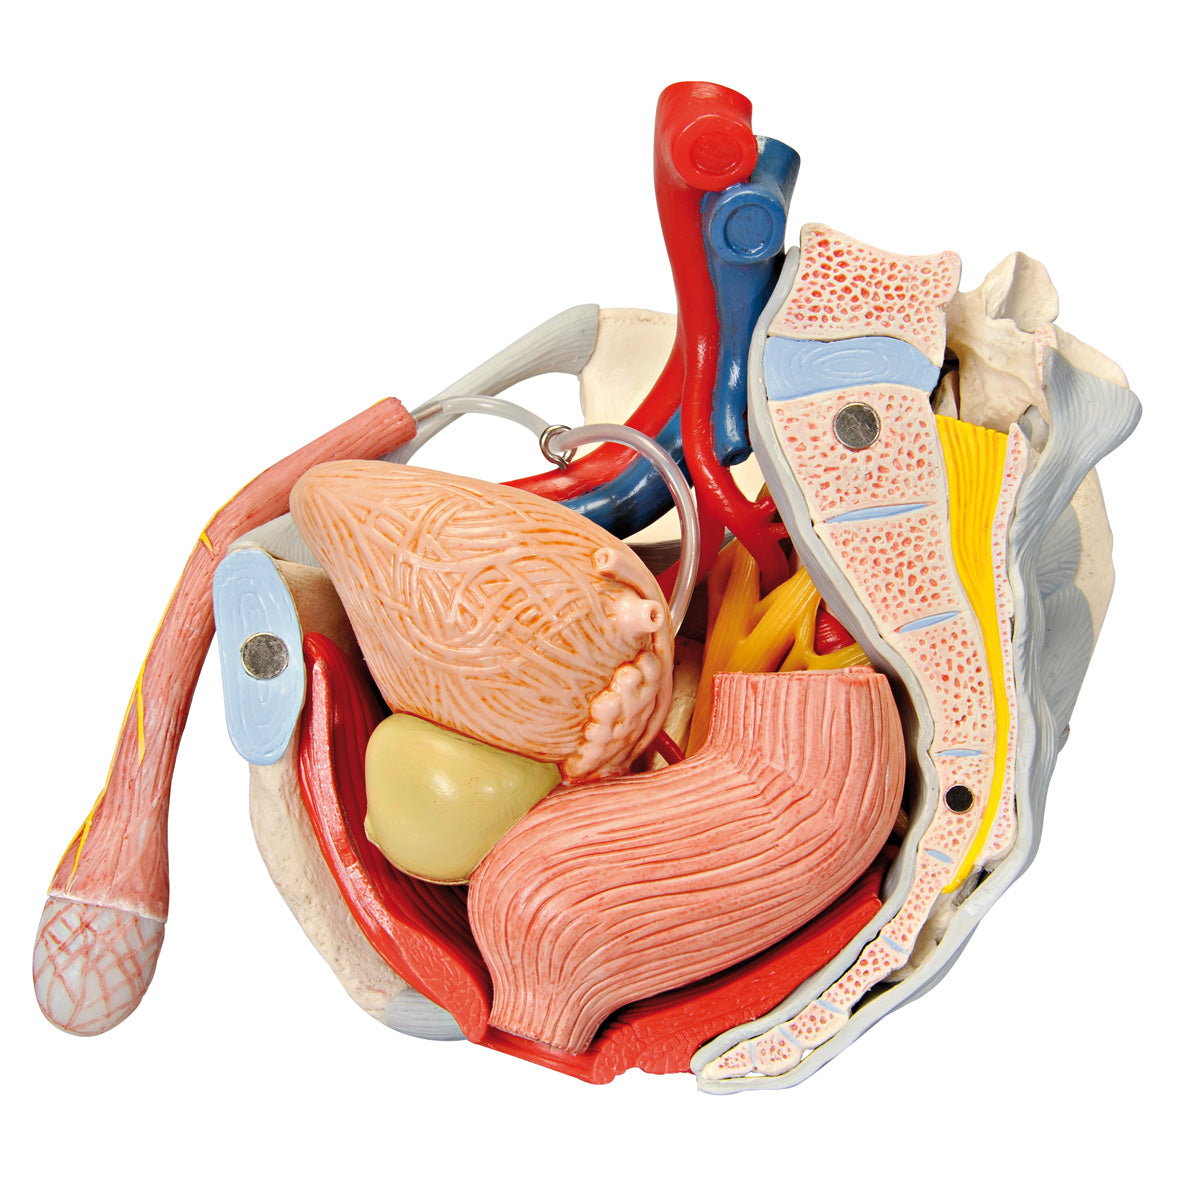 Bäckenmodell som visar bäckenbotten, könsorgan, ligament, nerver och blodkärl hos mannen